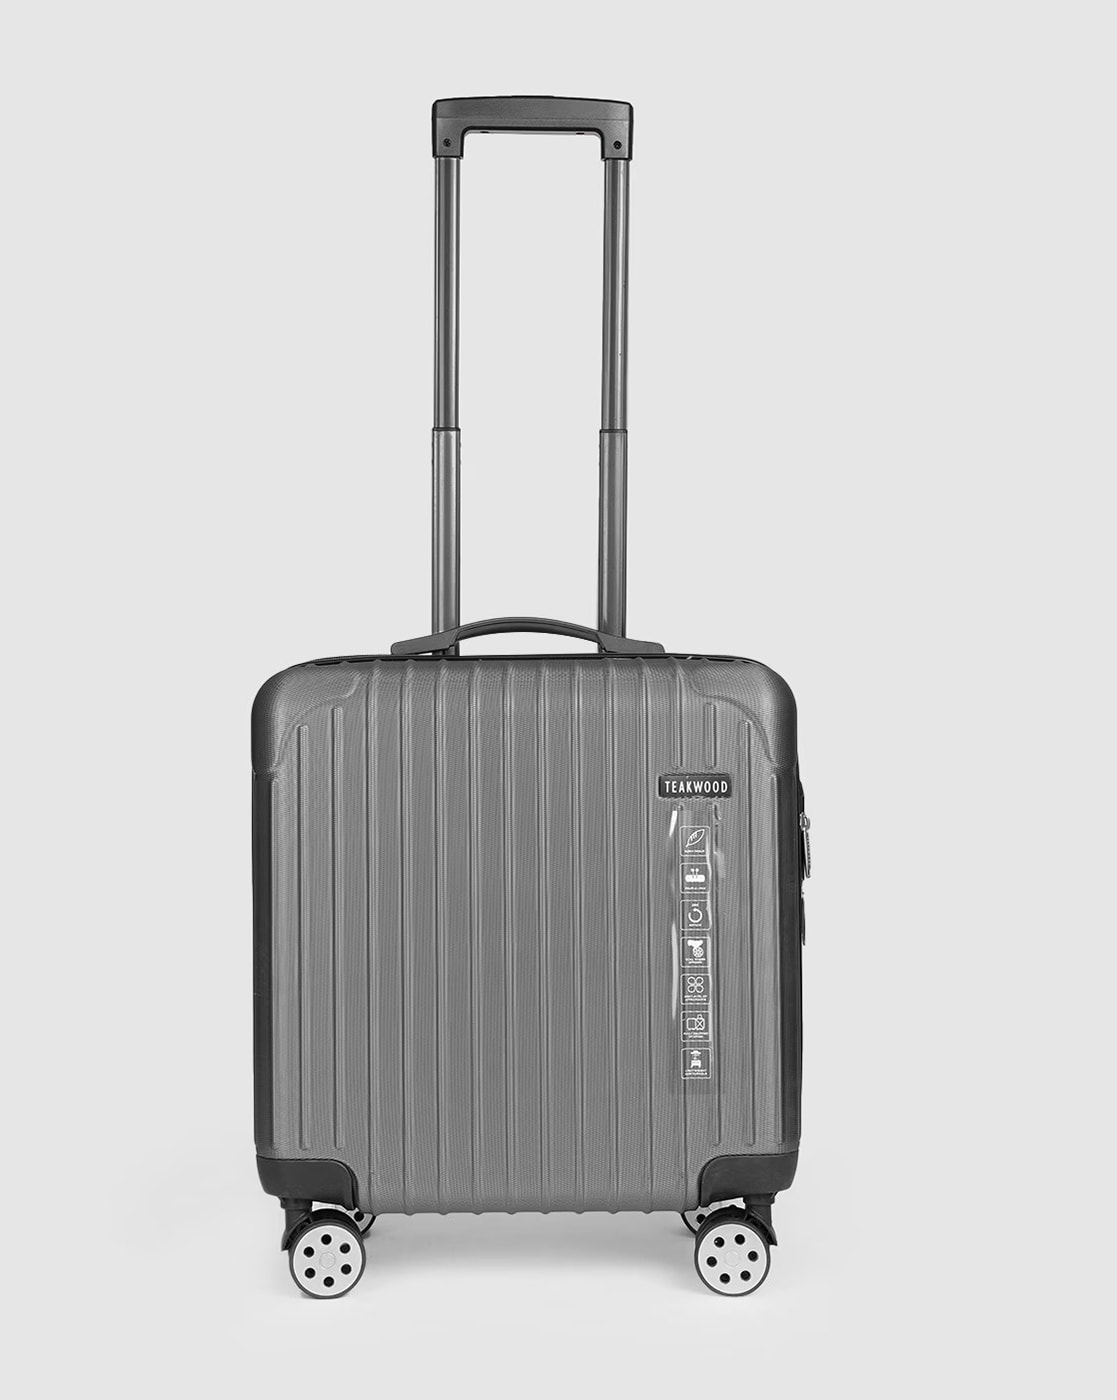 Swissgear 7850 Checklite Liteweight Underseat Luggage